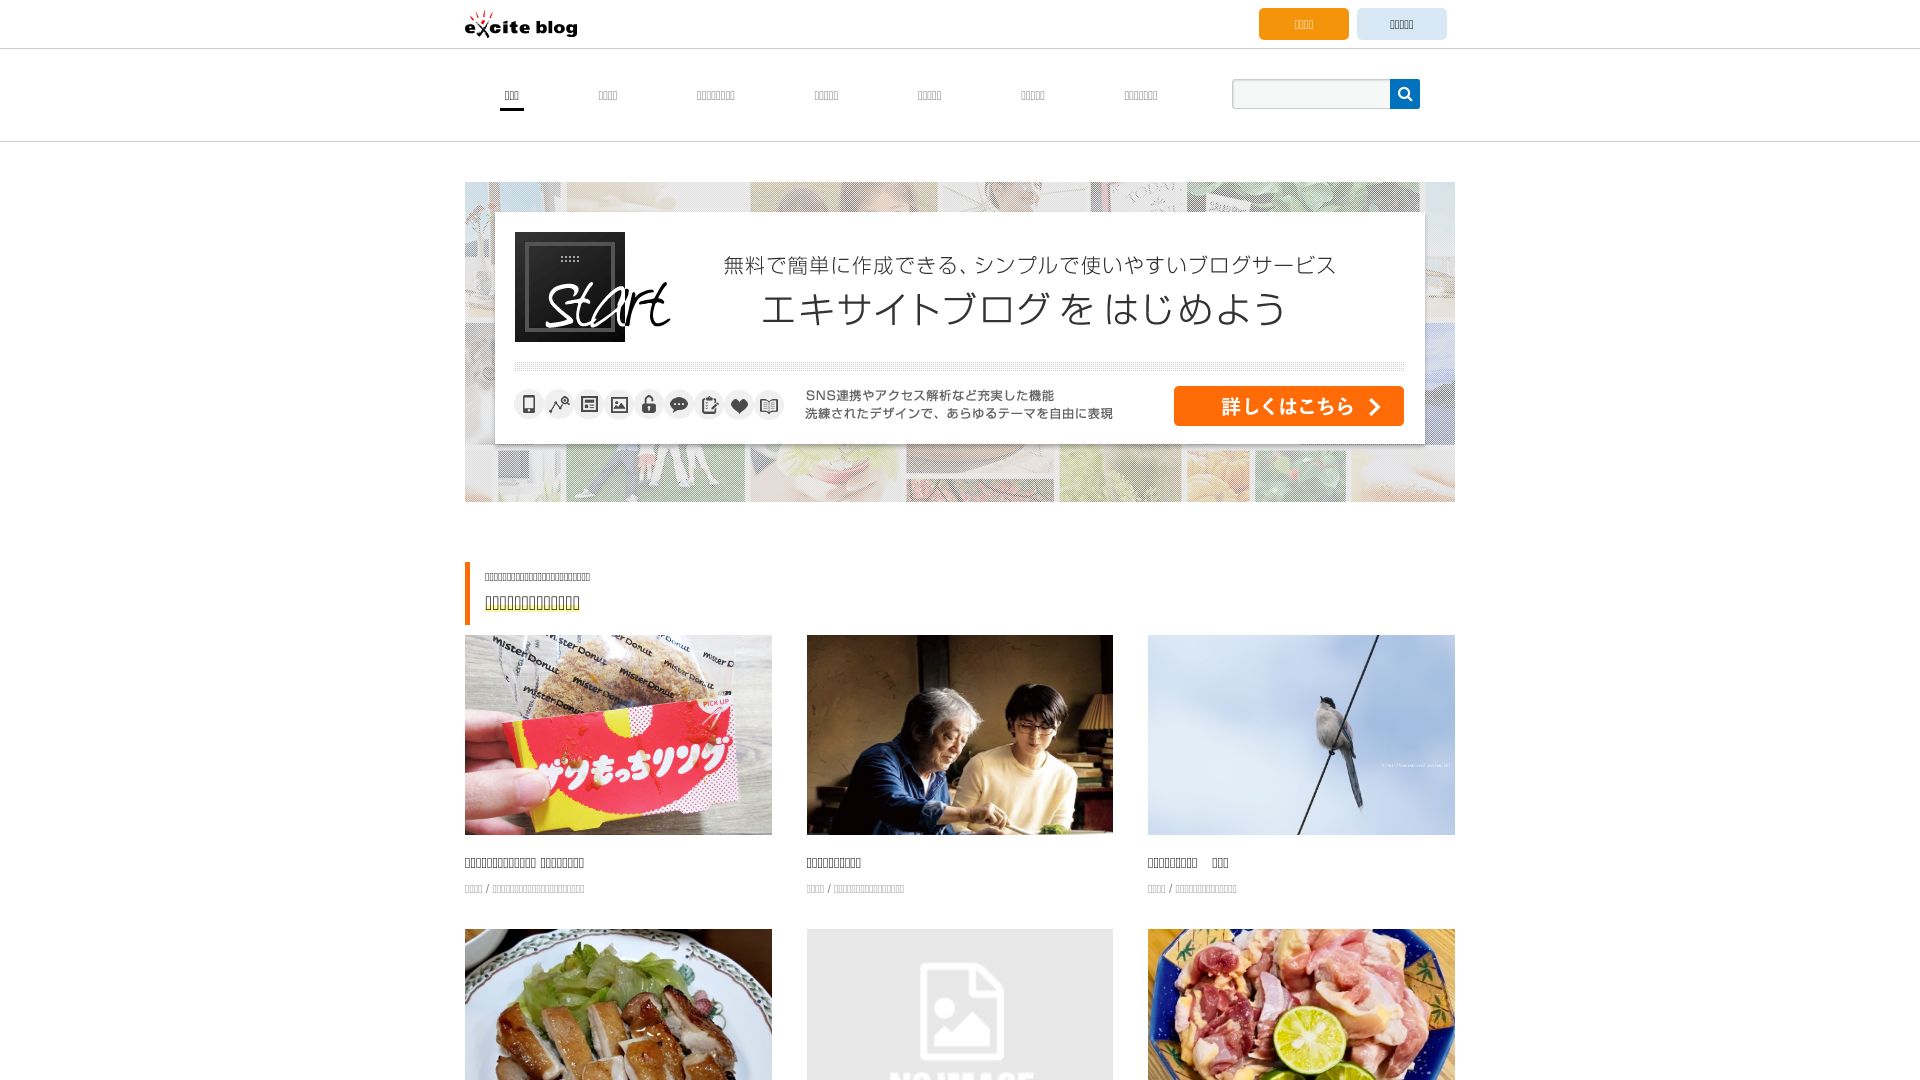 État du site web exblog.jp est   EN LIGNE